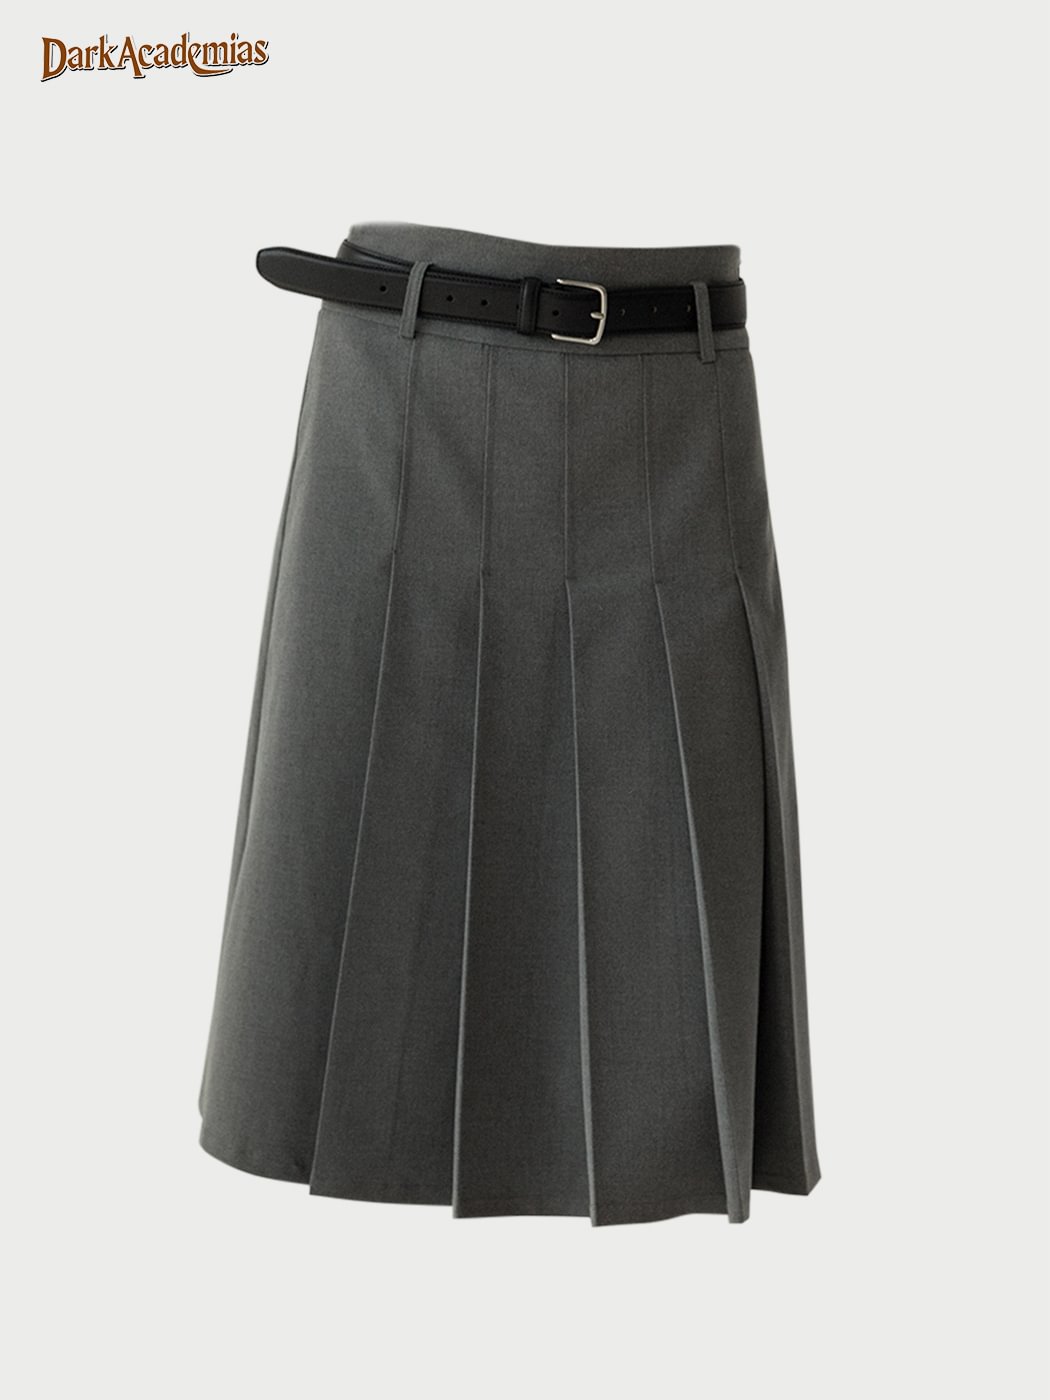 College Vintage Pressed Pleated Suit Skirt